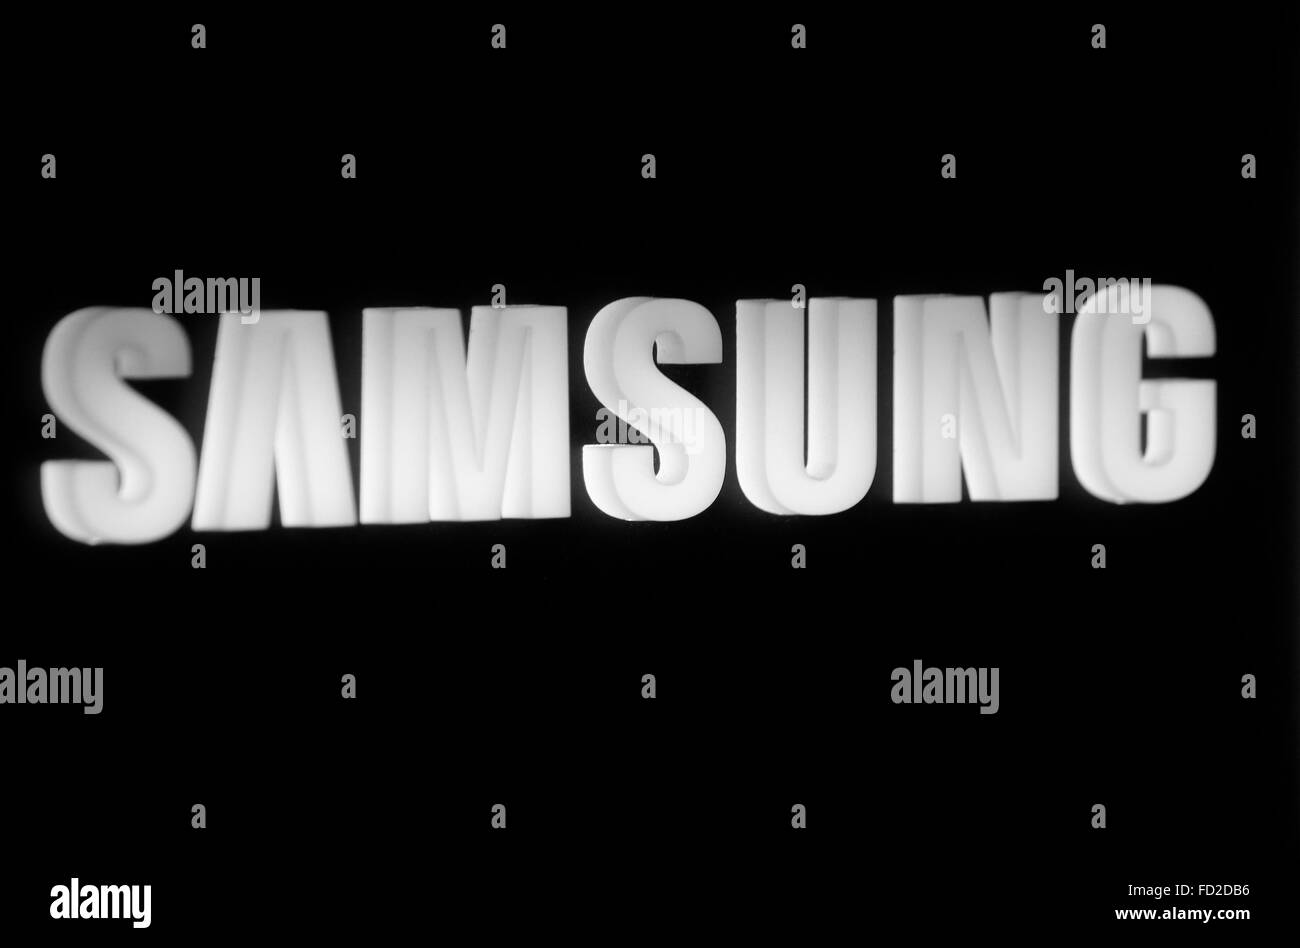 Samsung Logo PNG Images, Transparent Samsung Logo Image Download - PNGitem